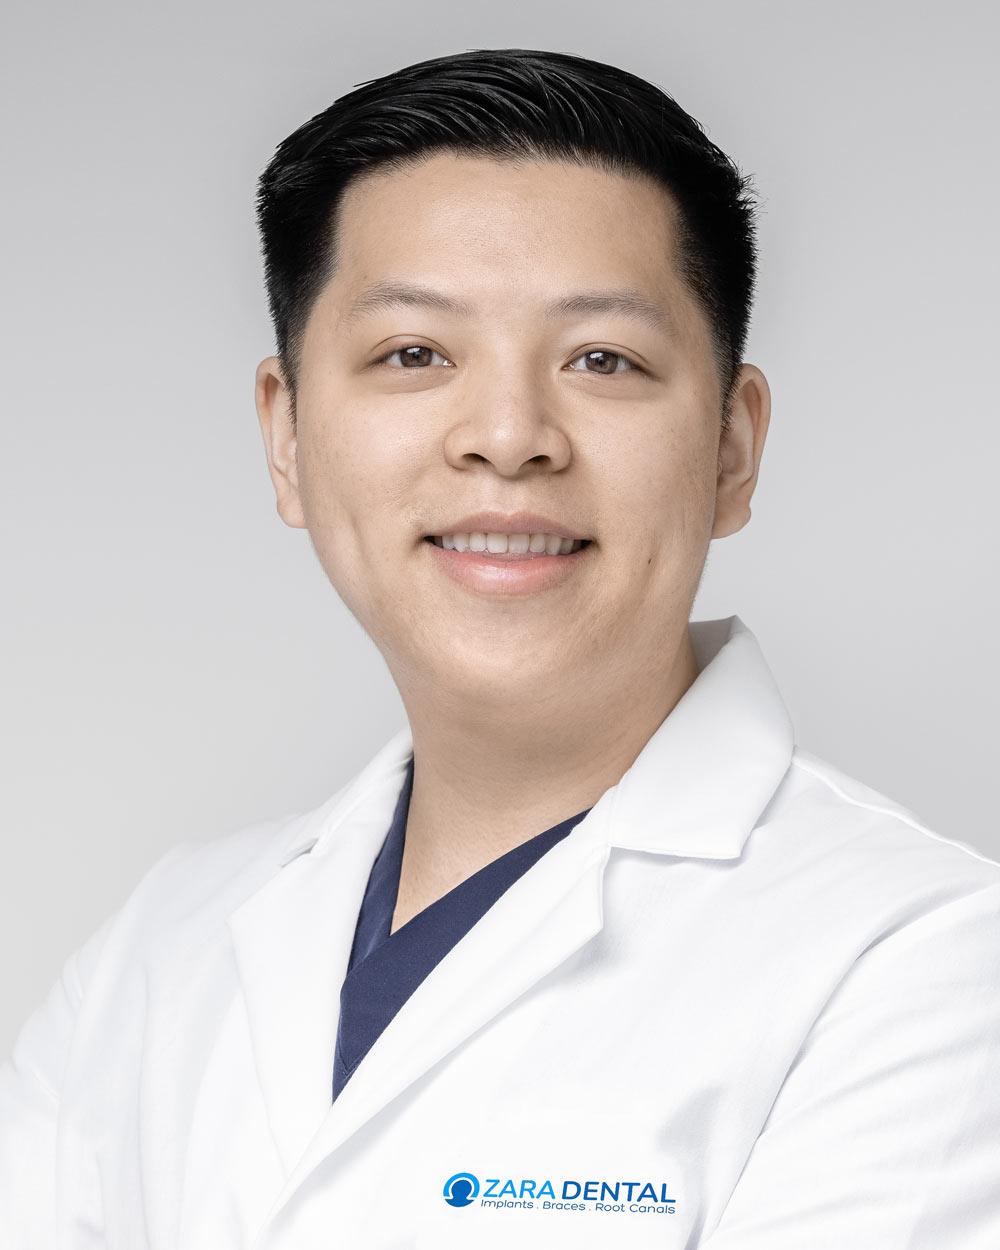 Dr. Vincent Hsu